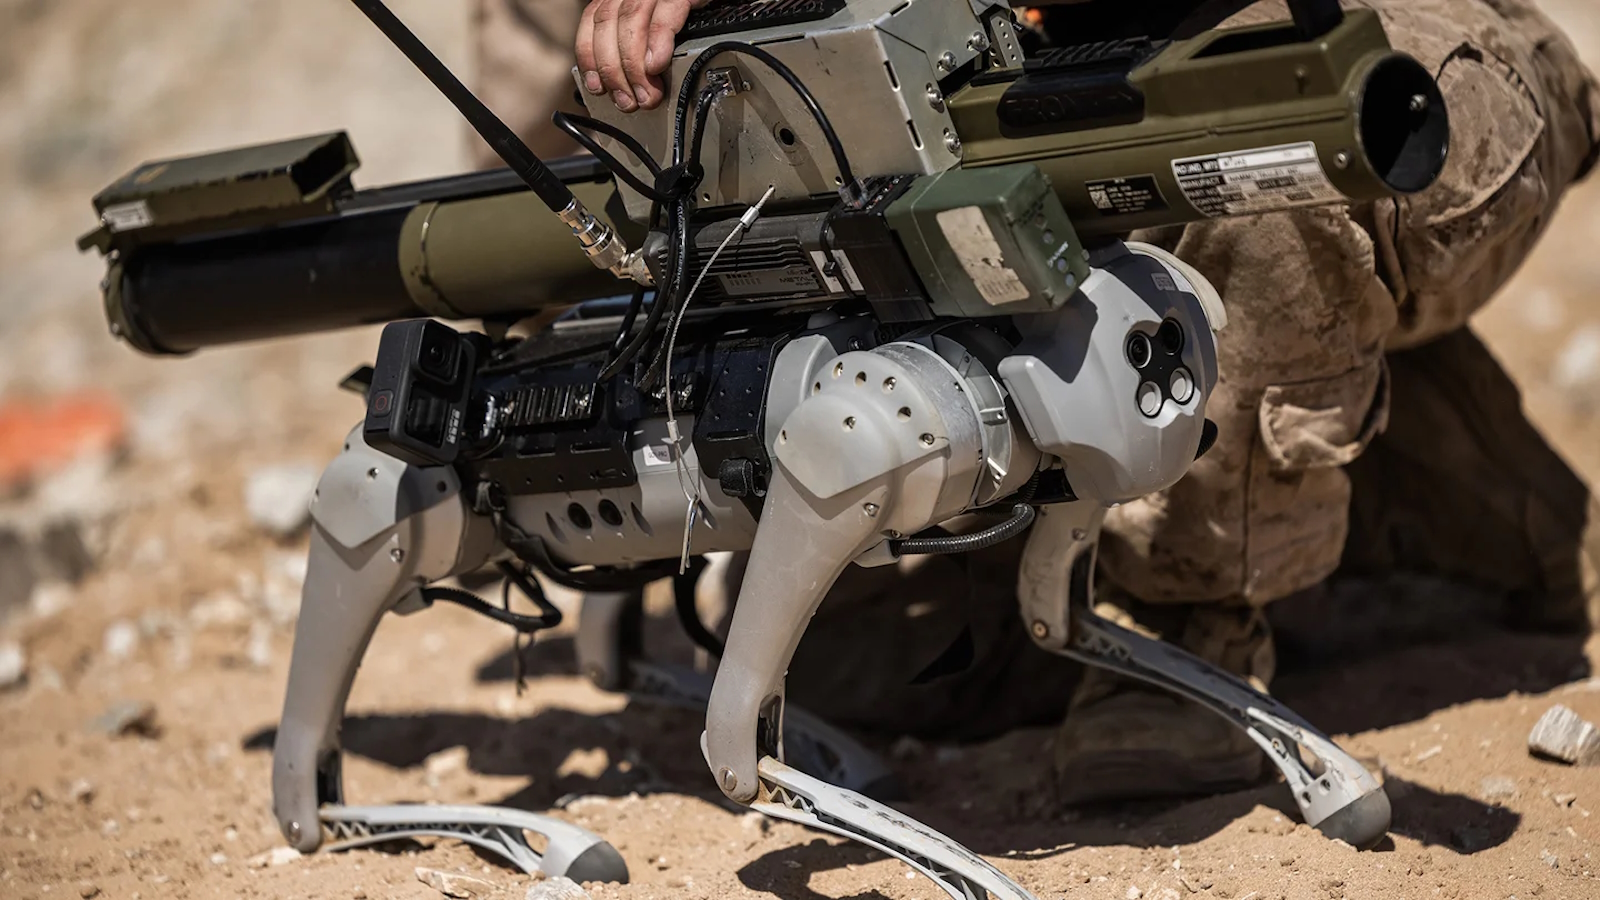 Un lance-roquette sur un robot-chien permettrait de s’approcher d’un blindé ennemi sans mettre en danger un soldat. © Justin J. Marty, US Marines